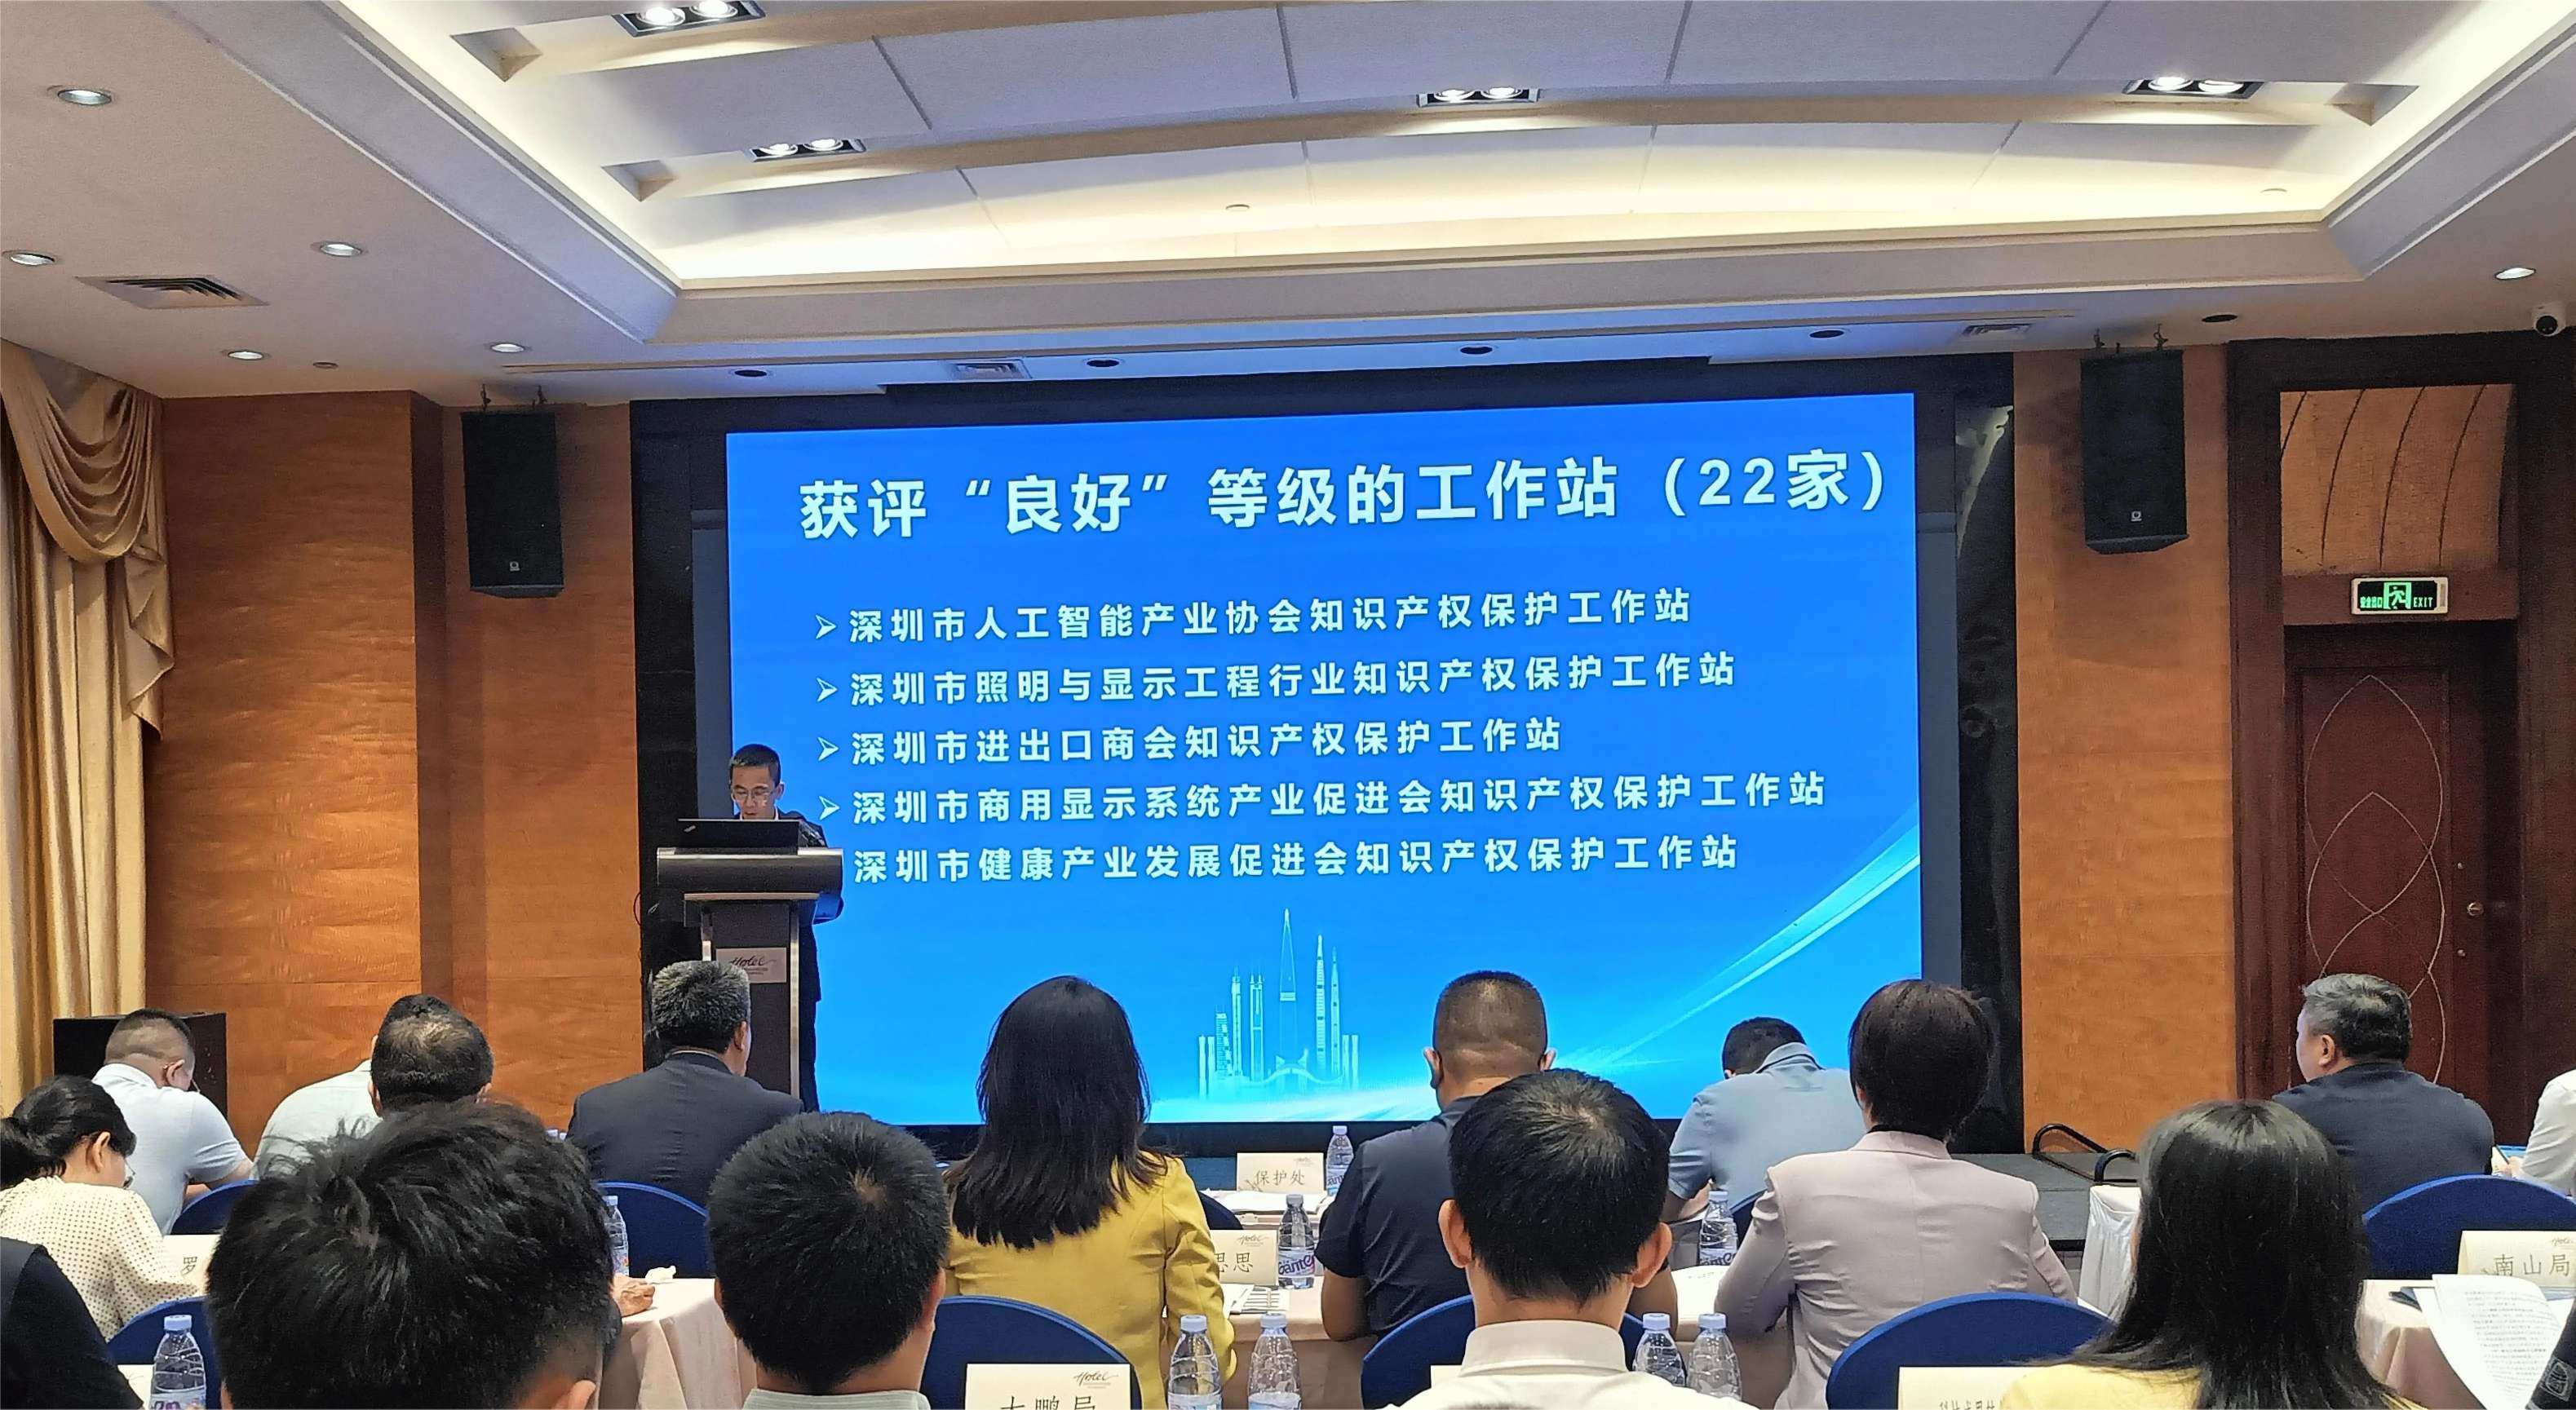 深圳市照明与显示工程行业协会知识产权保护工作站获评“良好”等级